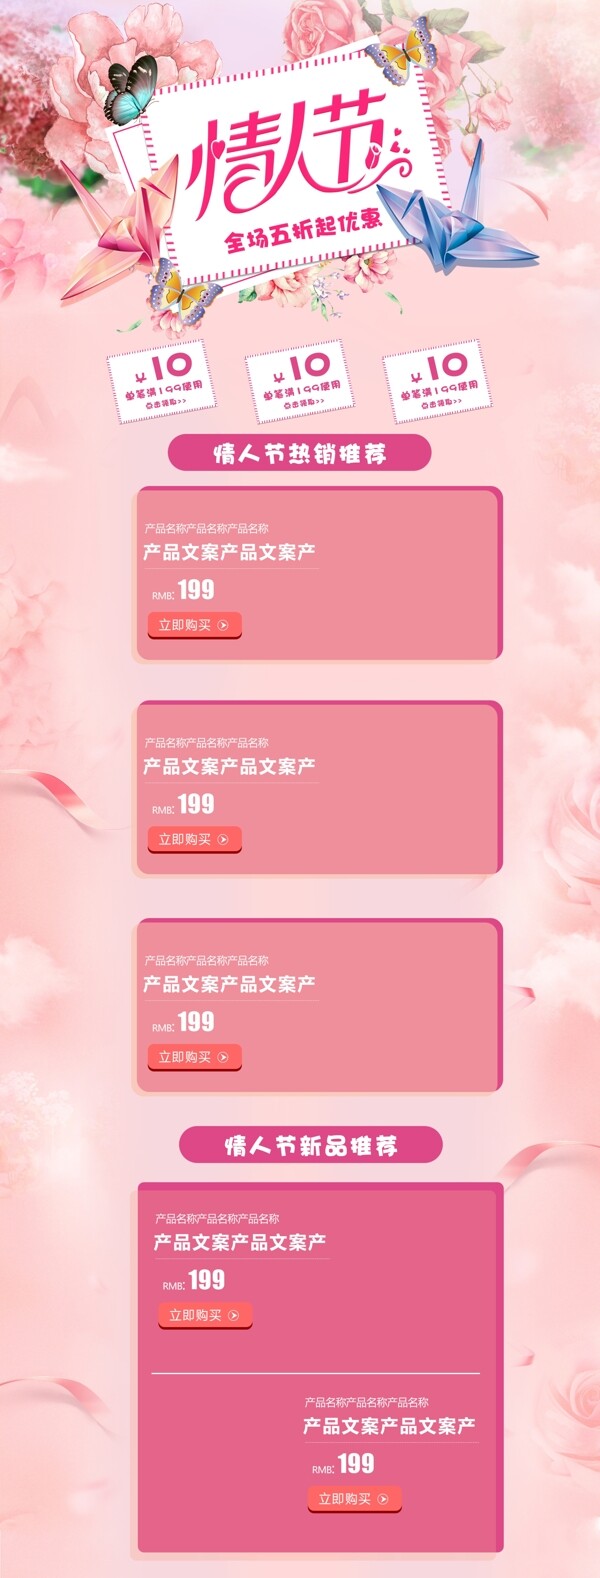 唯美粉色手绘风格七夕情人节首页模板